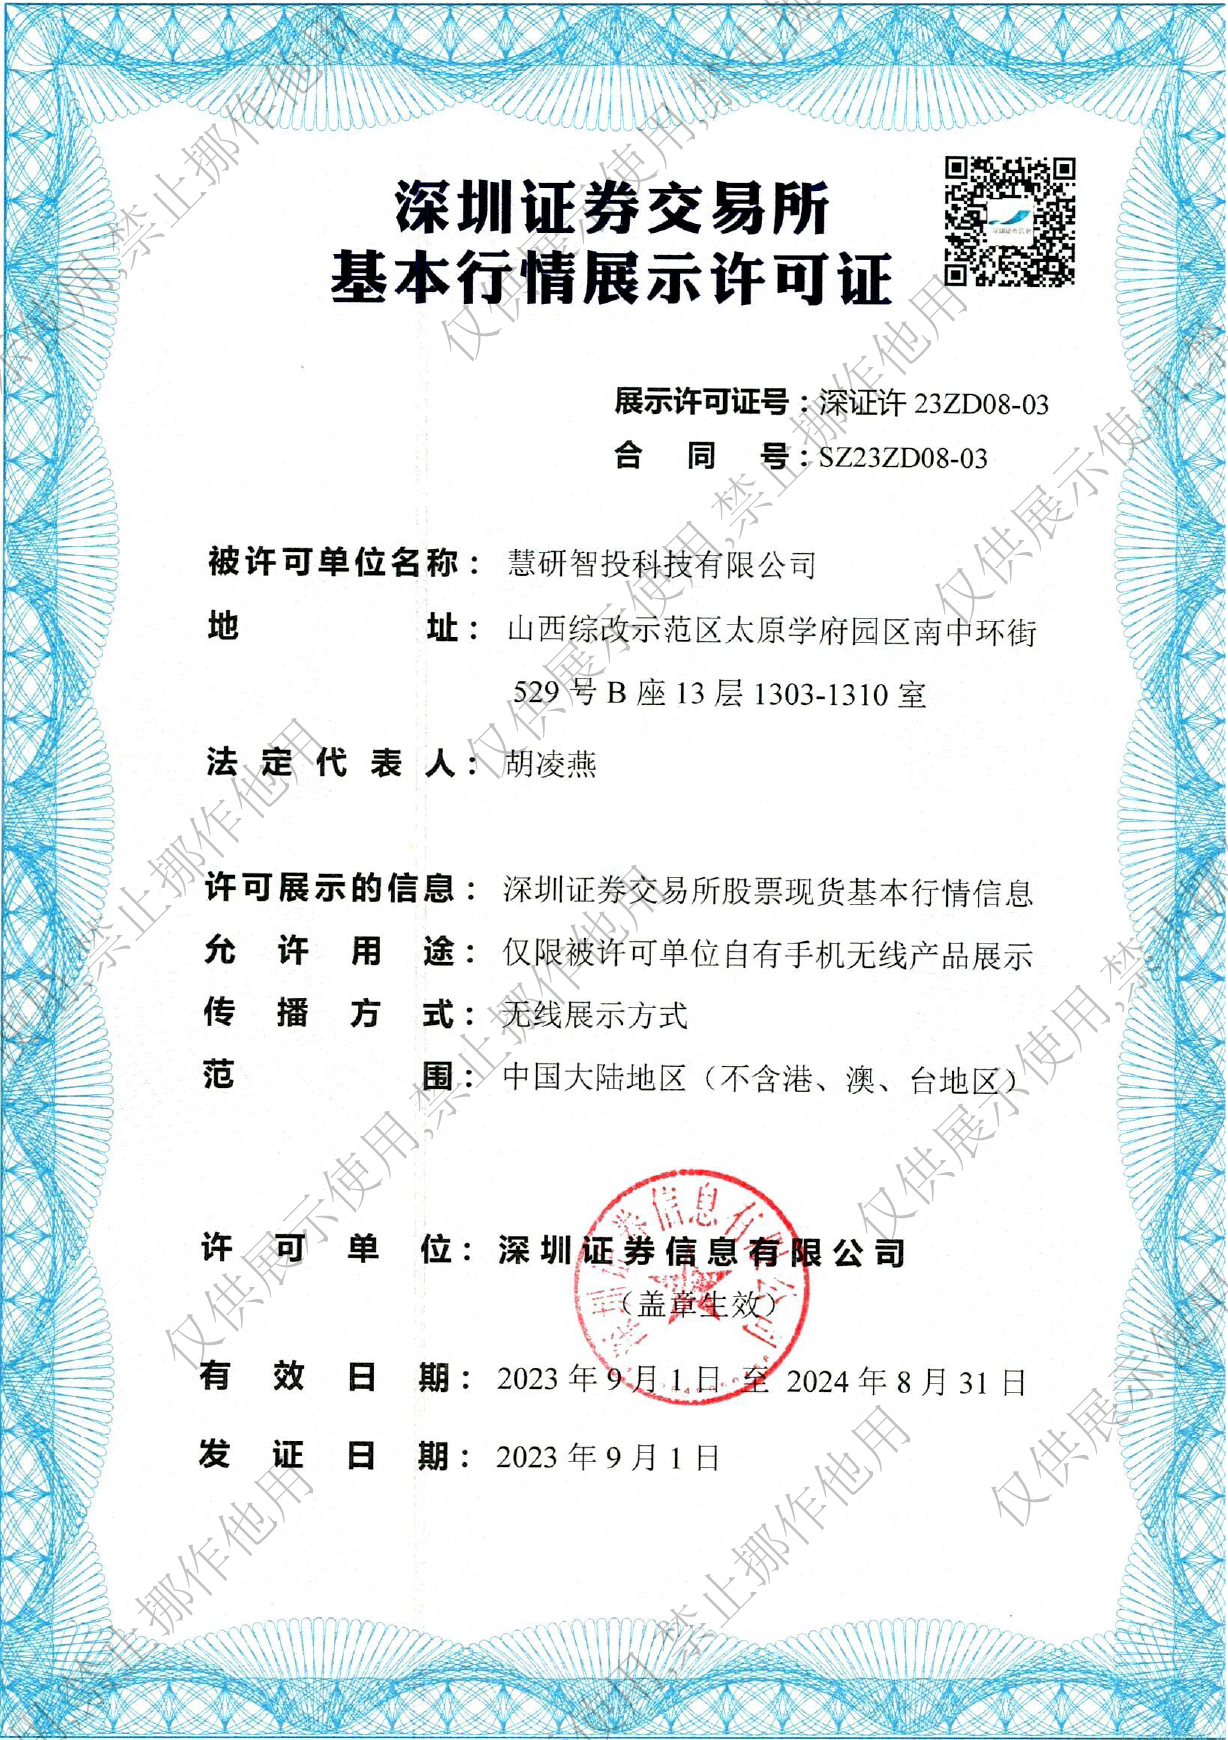 深圳交易证券所 基本行情展示许可证